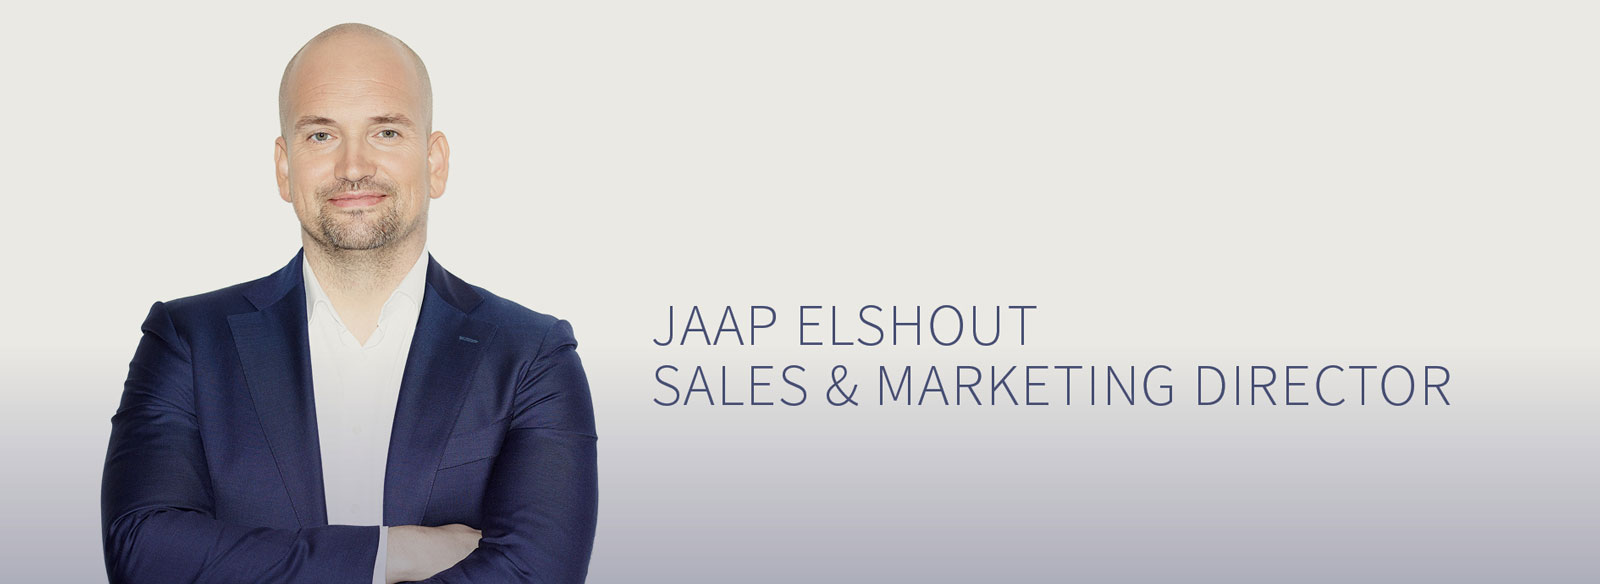 Jaap Elshout